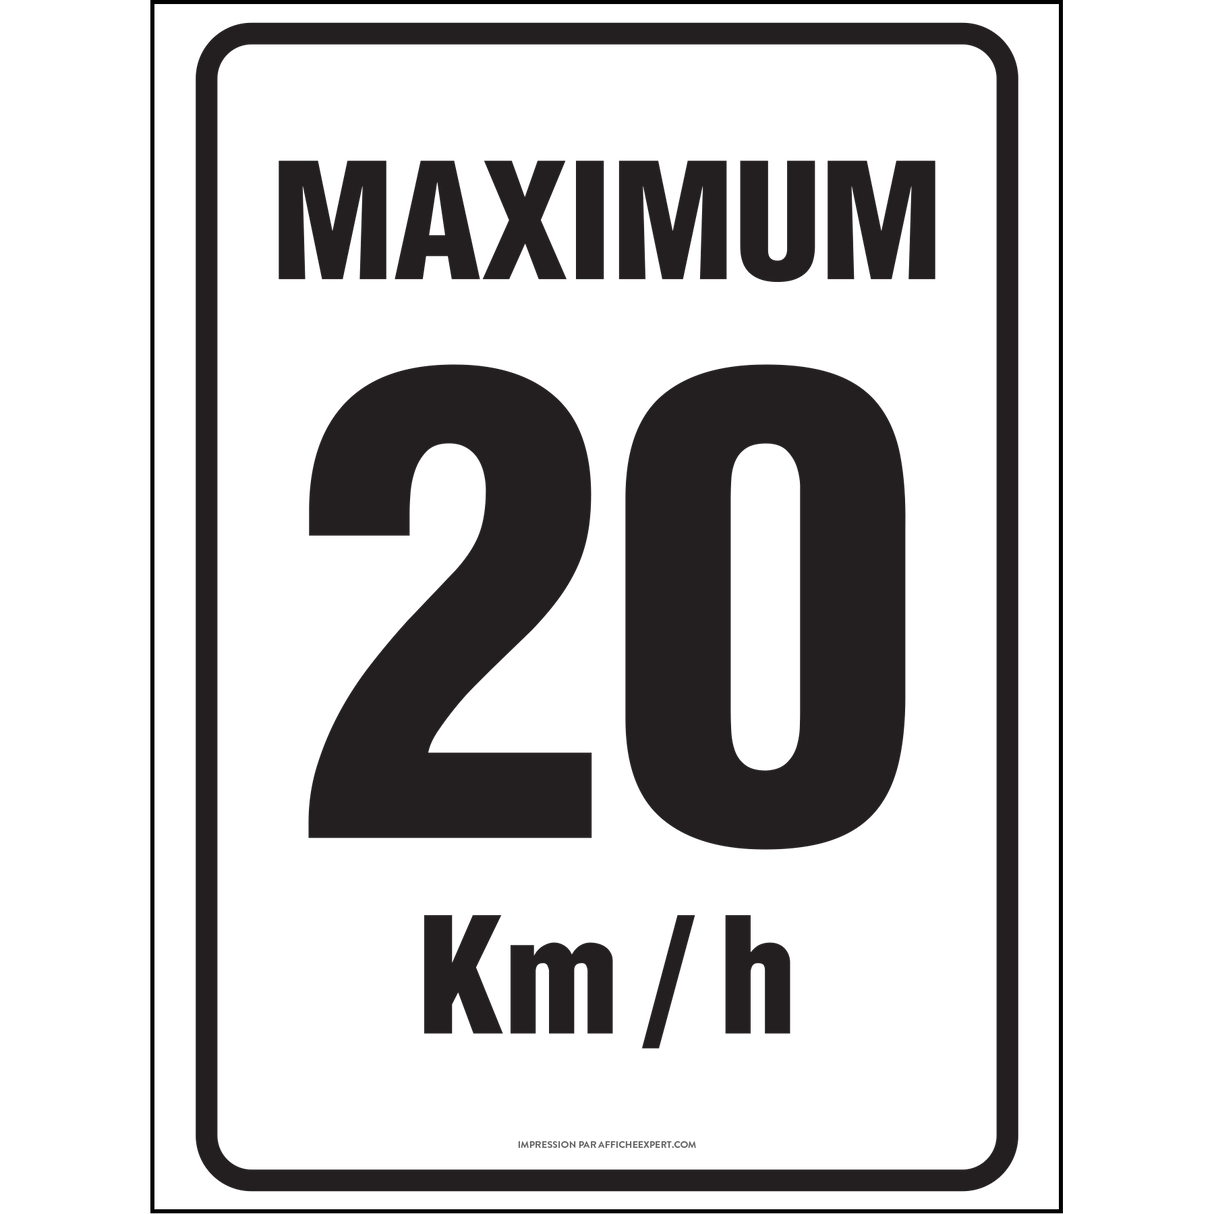 Maximum 20 km/h